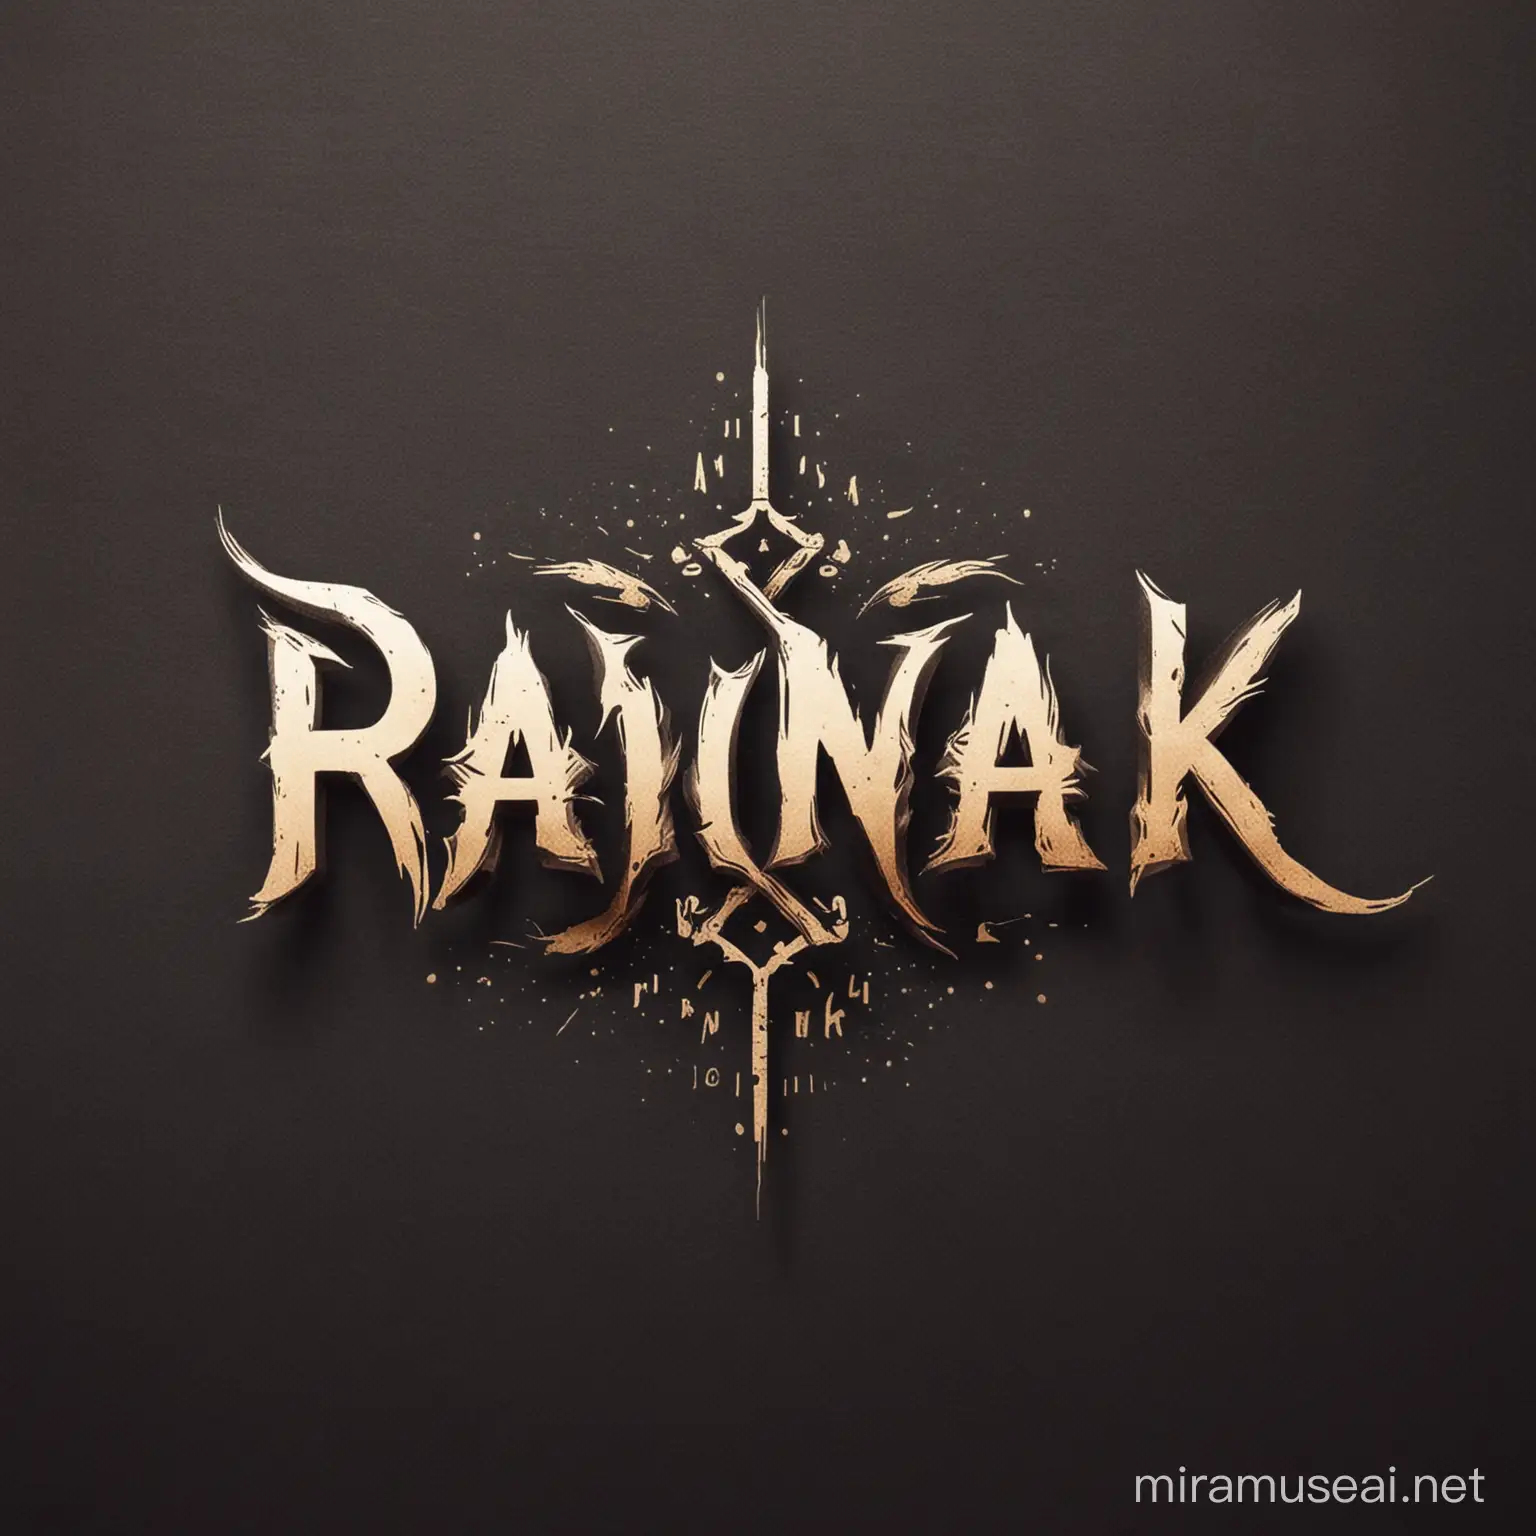 Rawnak name logo design